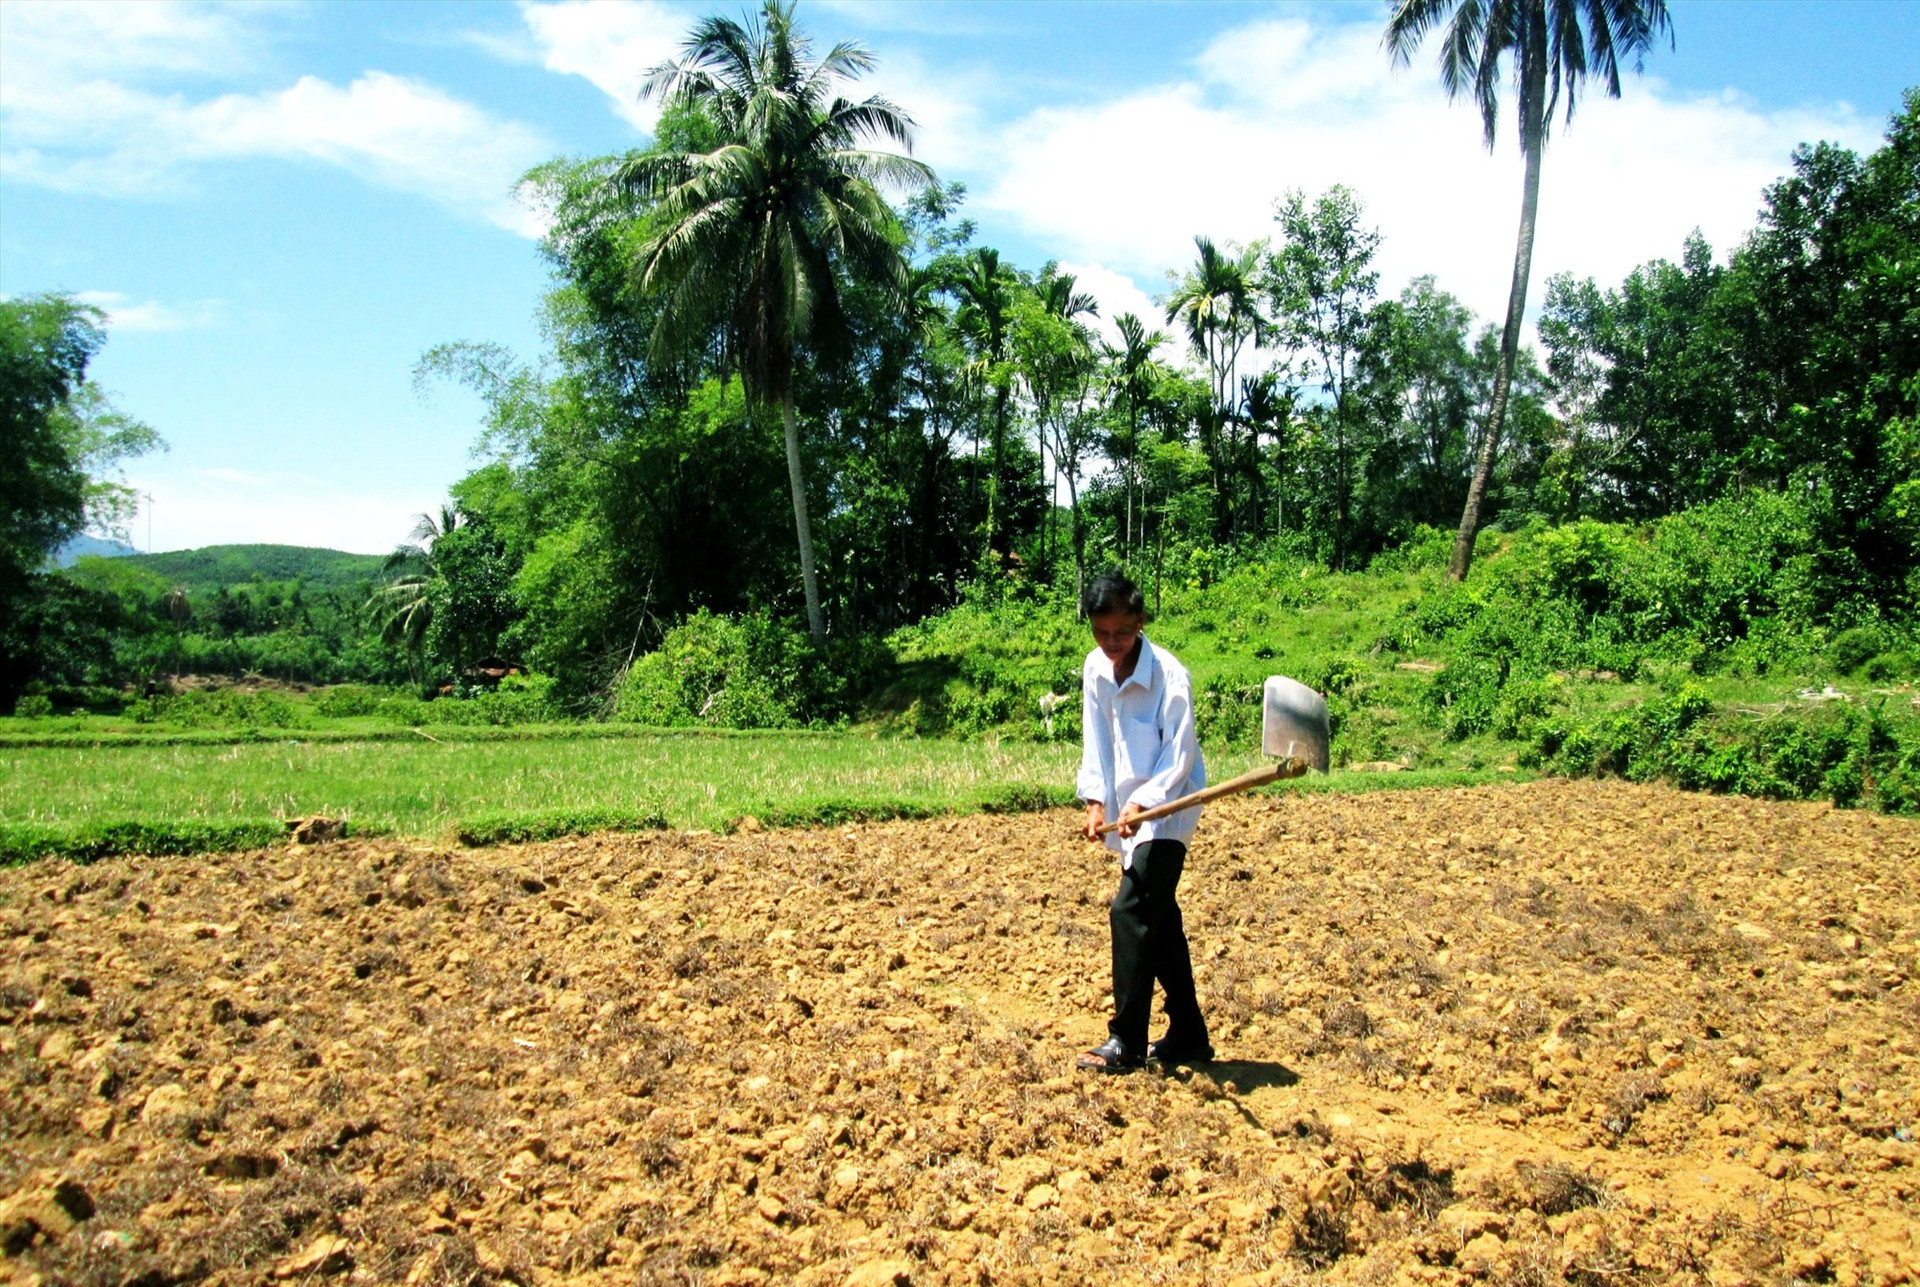 Do khó khăn về nguồn nước tưới nên một số ruộng lúa ở xã Quế Lưu (Hiệp Đức) thường phải bỏ hoang hoặc chuyển sang sản xuất các loại cây trồng cạn trong vụ hè thu. Ảnh: P.Đ